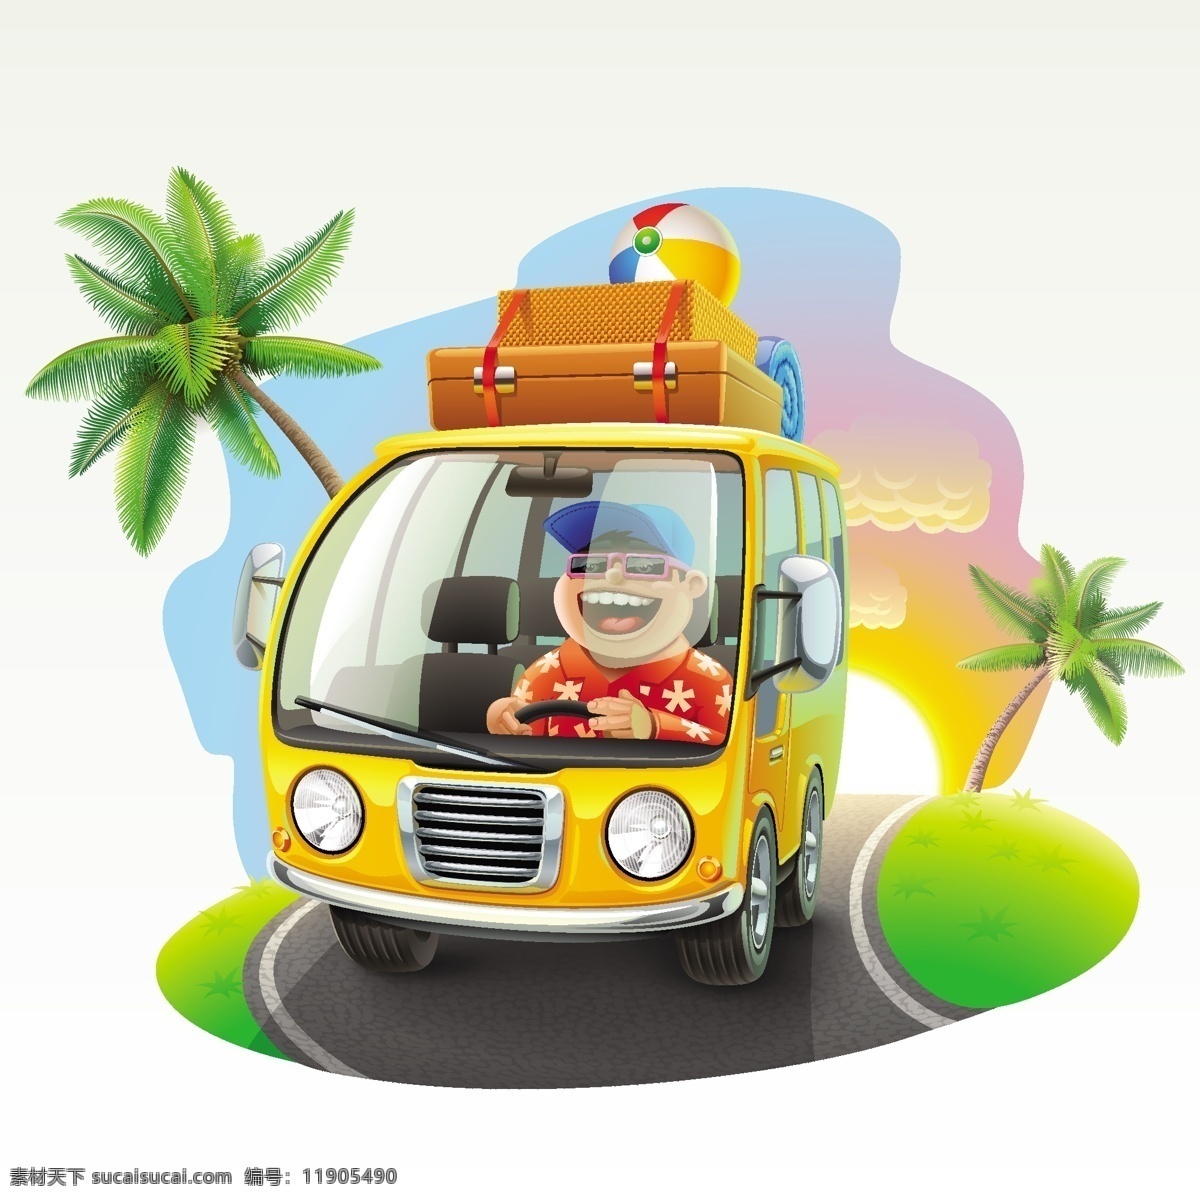 椰树 行李 旅游客车 司机 热带 太阳 海边 旅行 面包车 在路上 矢量图 卡通 旅游 客车 矢量 白色